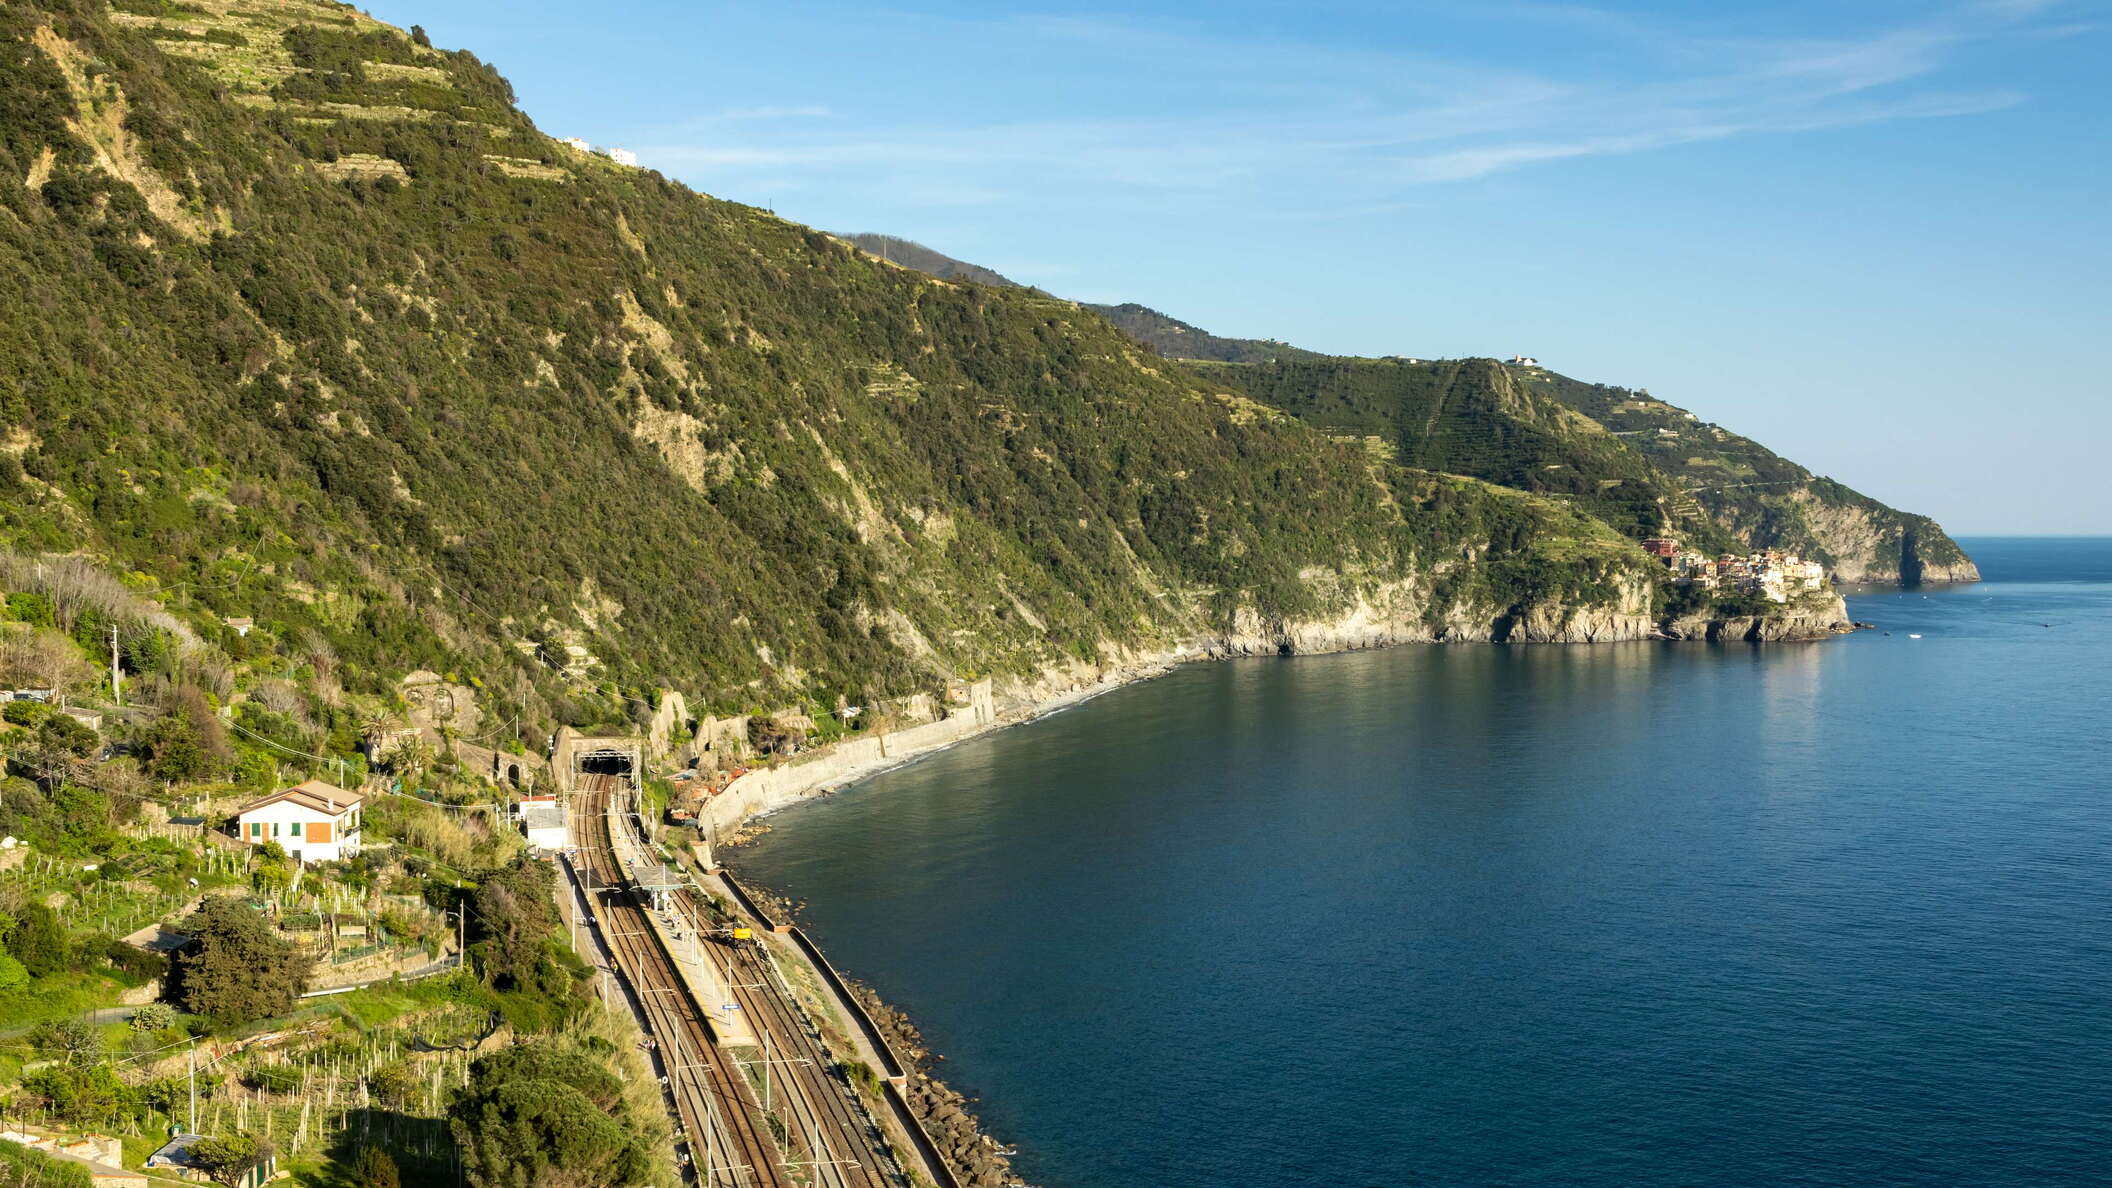 Cinque Terre | Corniglia railway station and Manarola